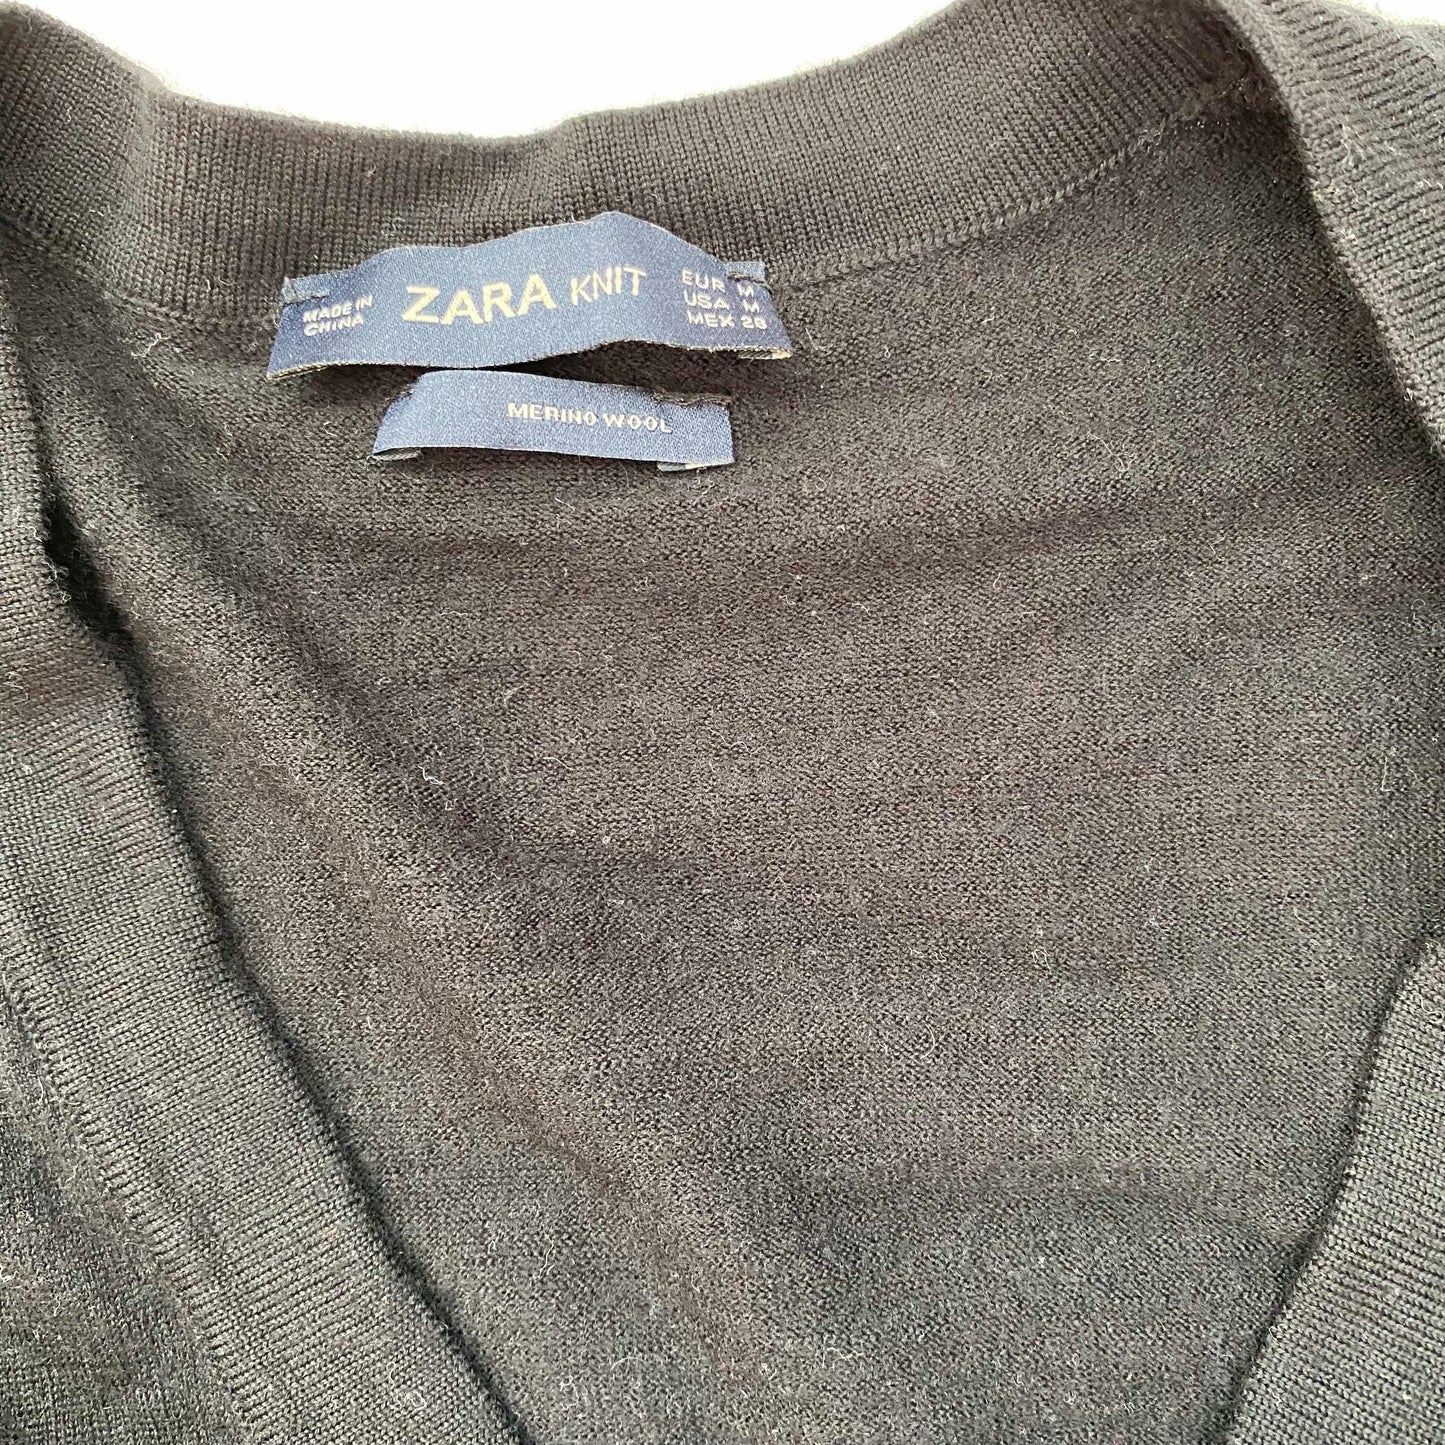 Zara merino wool cardigan, Women's M